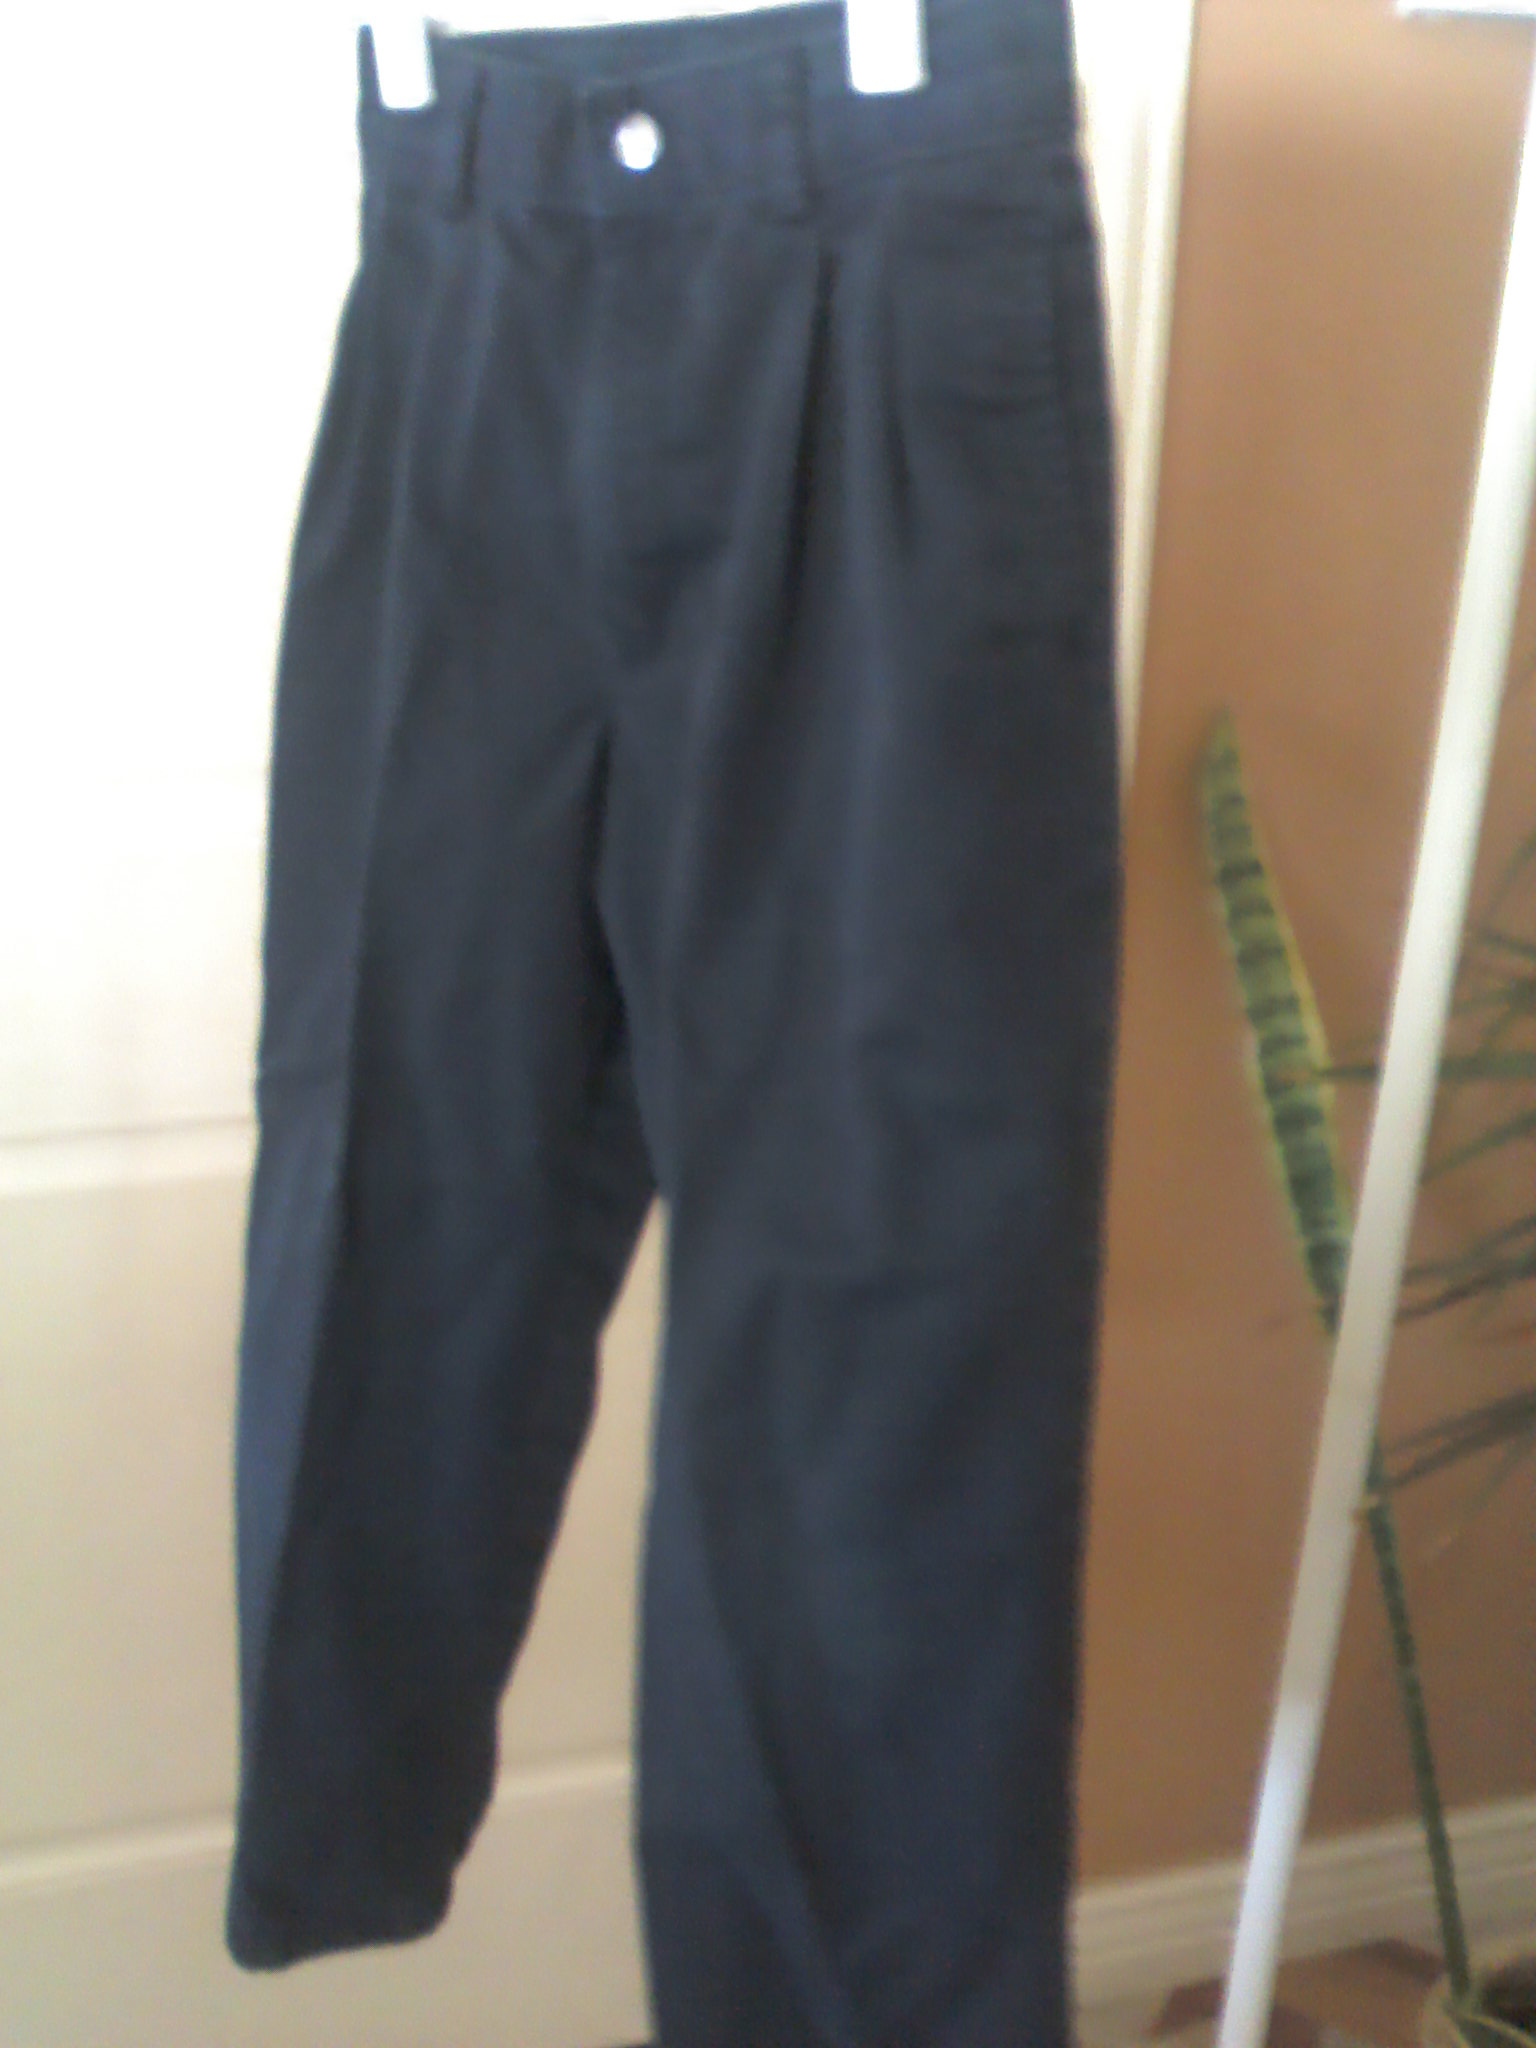 IZOD girls navy blue pants size 7 slim